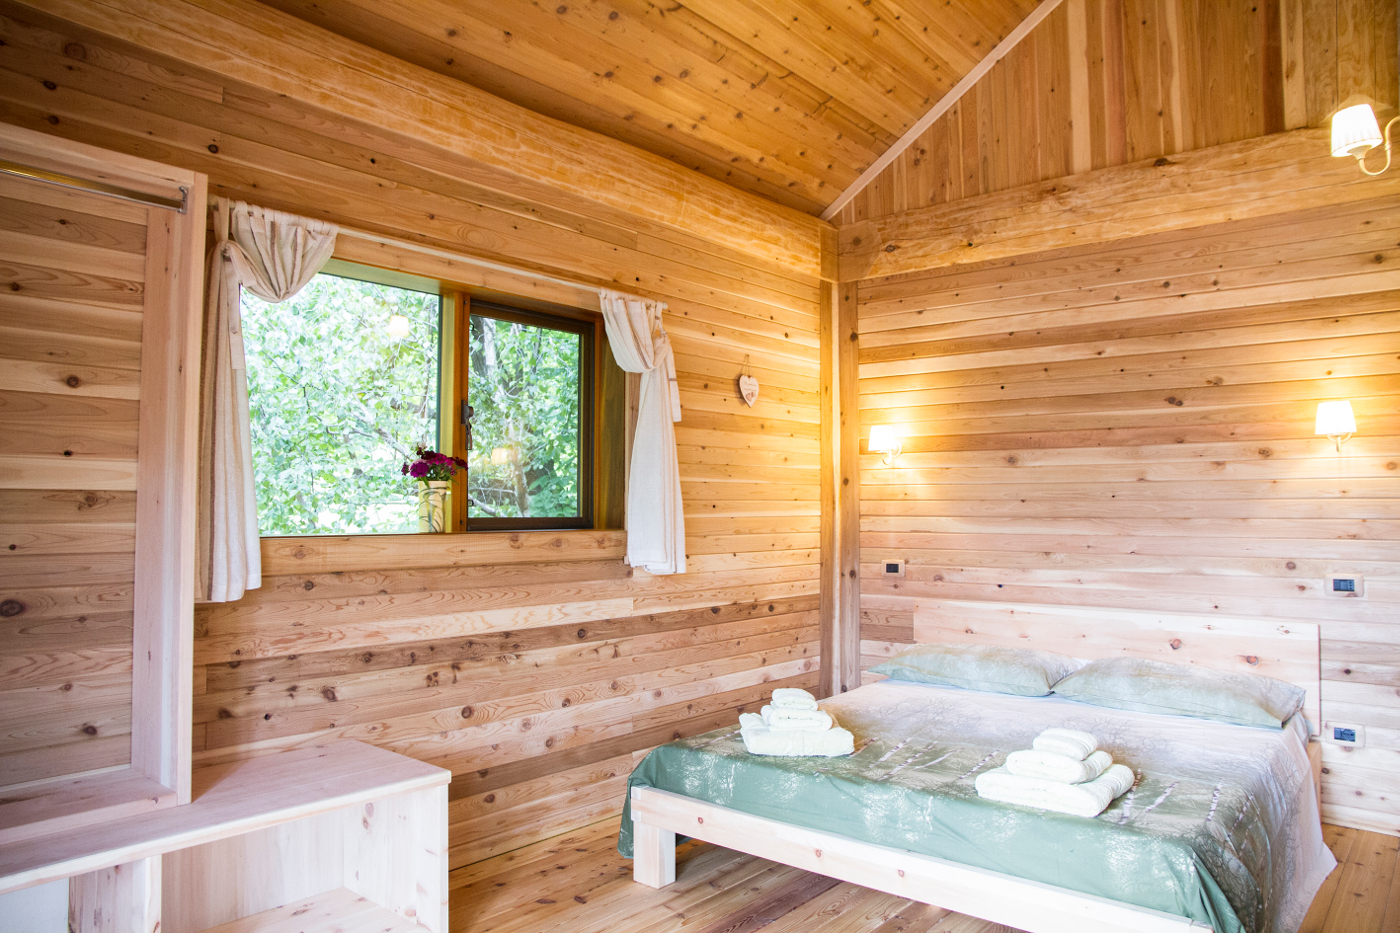 Camera da letto in legno naturale nella casa sull'alberoa Pamaparato, in provincia di Cuneo, Piemonte